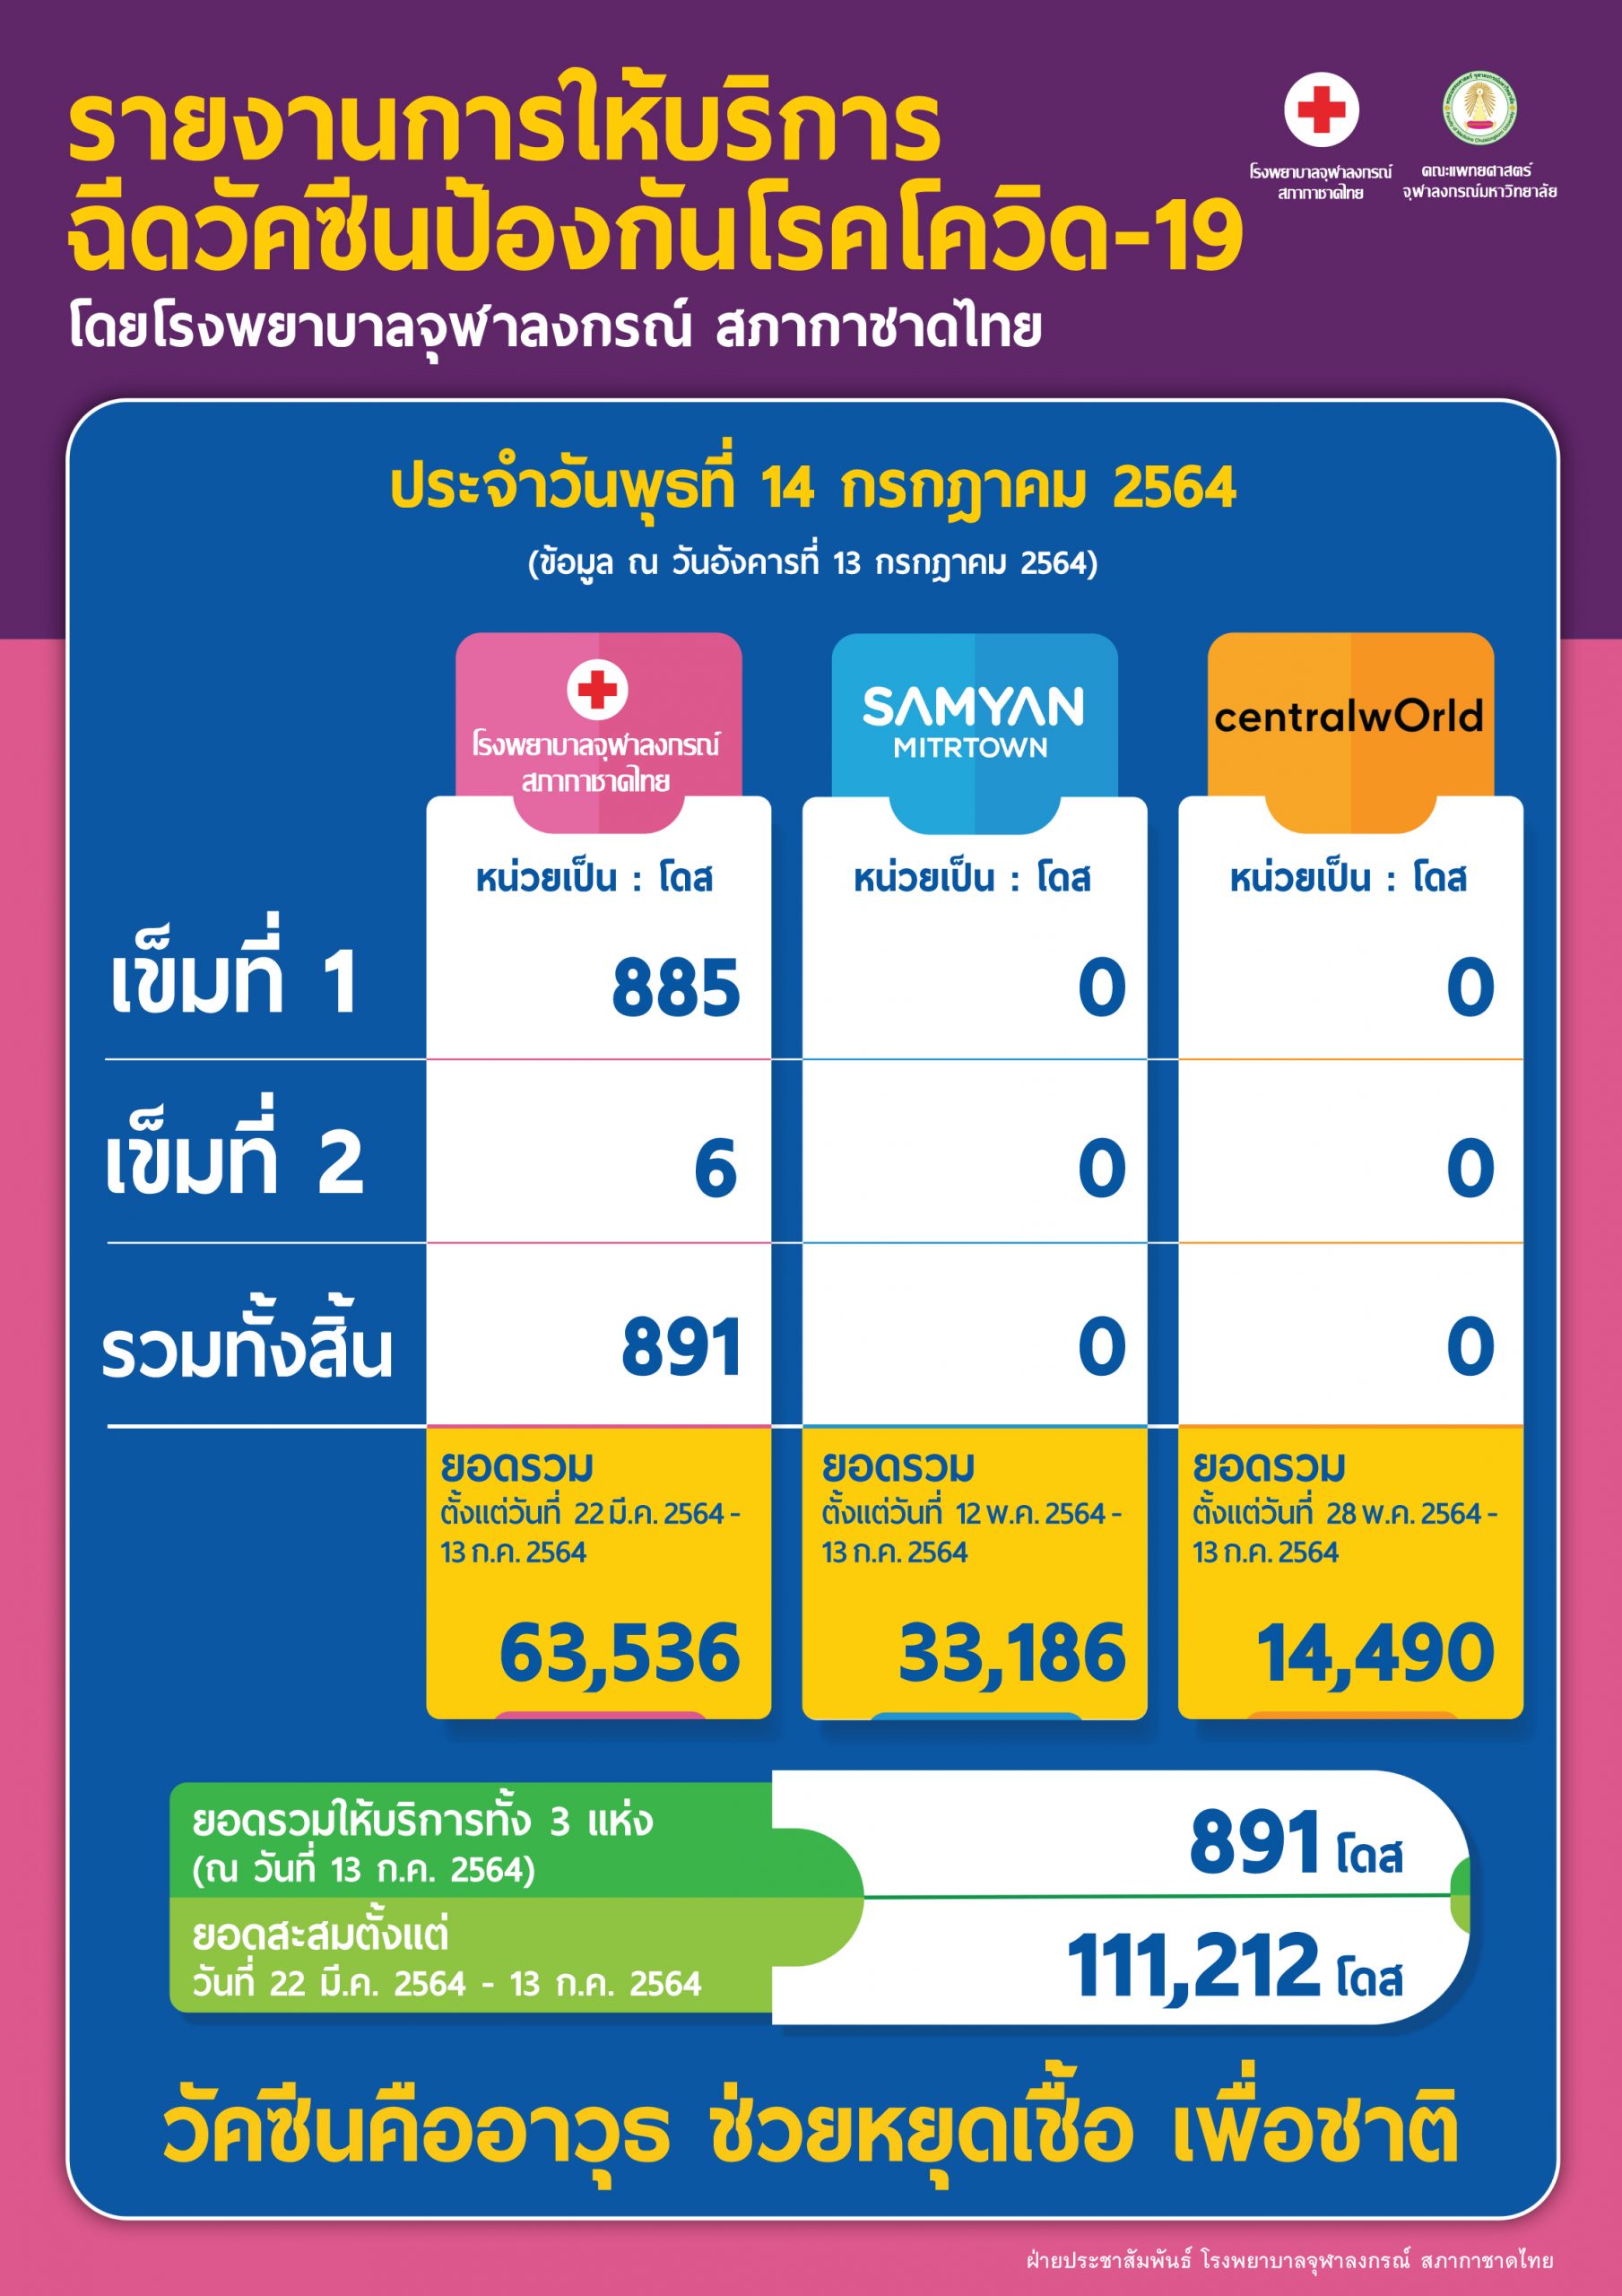 รายงานการให้บริการฉีดวัคซีนป้องกันโรคโควิด-19 โดยโรงพยาบาลจุฬาลงกรณ์ สภากาชาดไทย ประจำวันพุธที่ 14 กรกฎาคม 2564